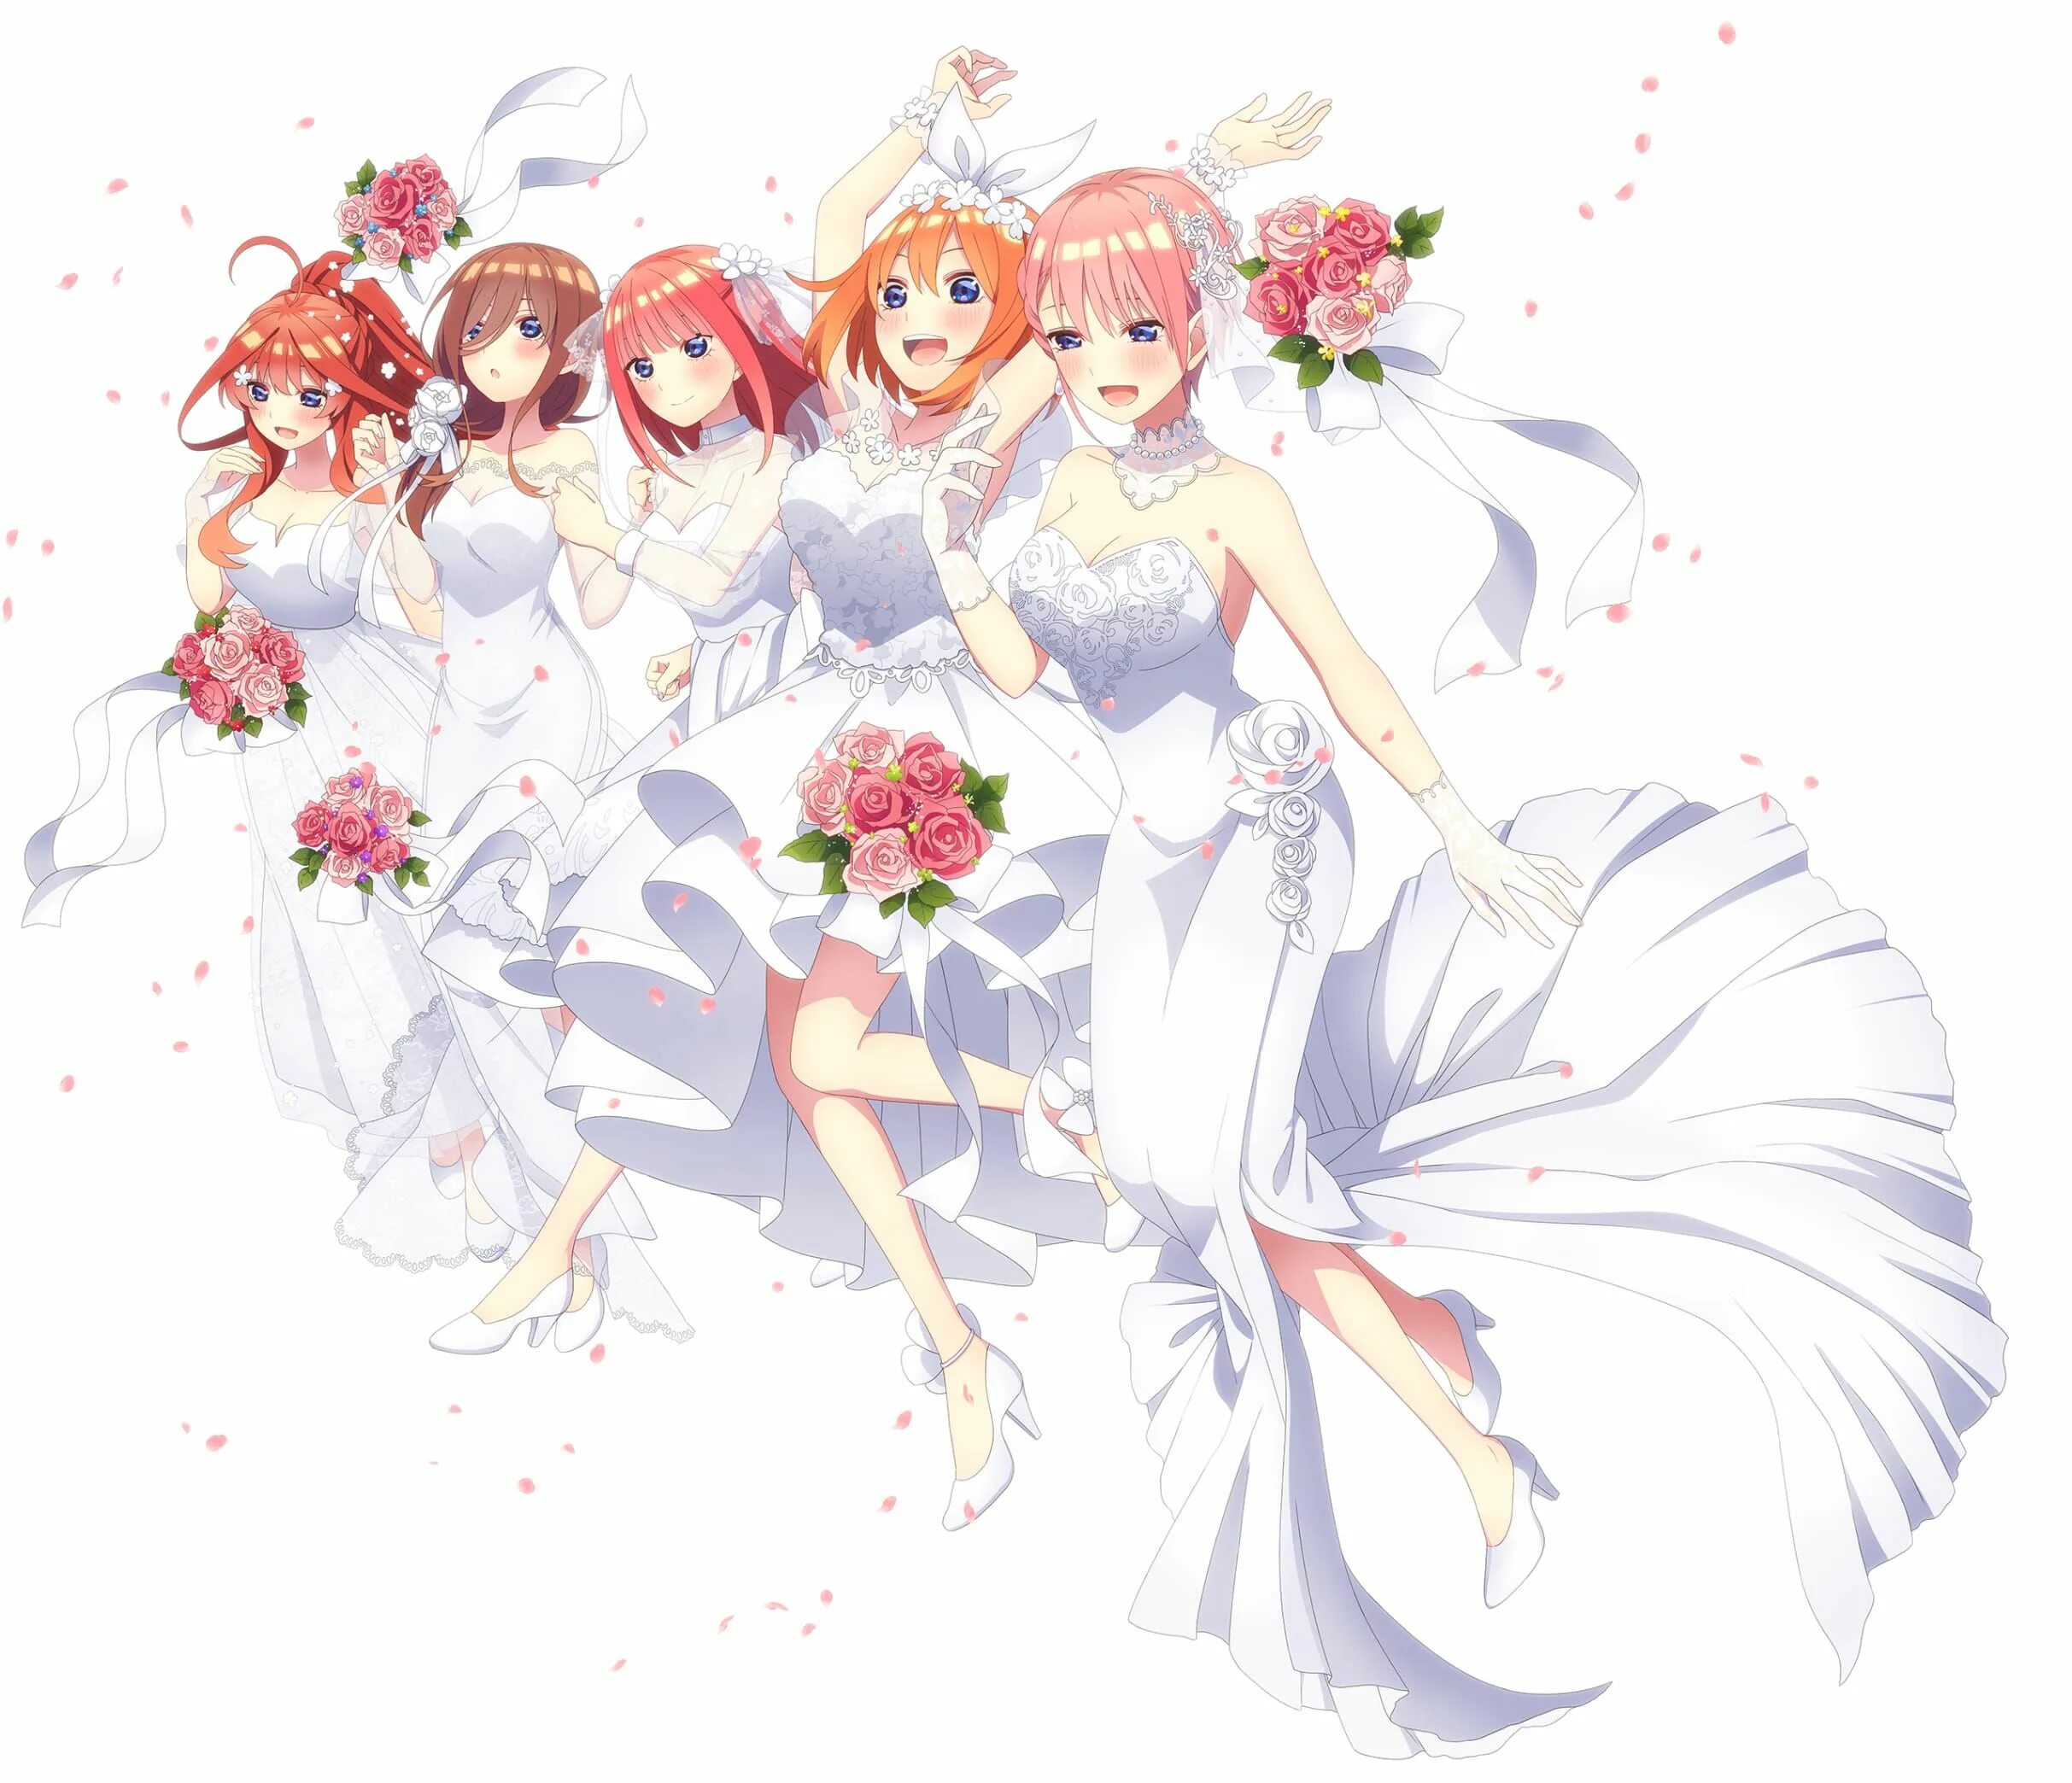 Невеста экстра любовь когда выйдет 2. Пять невест / 5-TOUBUN no Hanayome. The quintessential Quintuplets. Пять невест сёстры Накано.